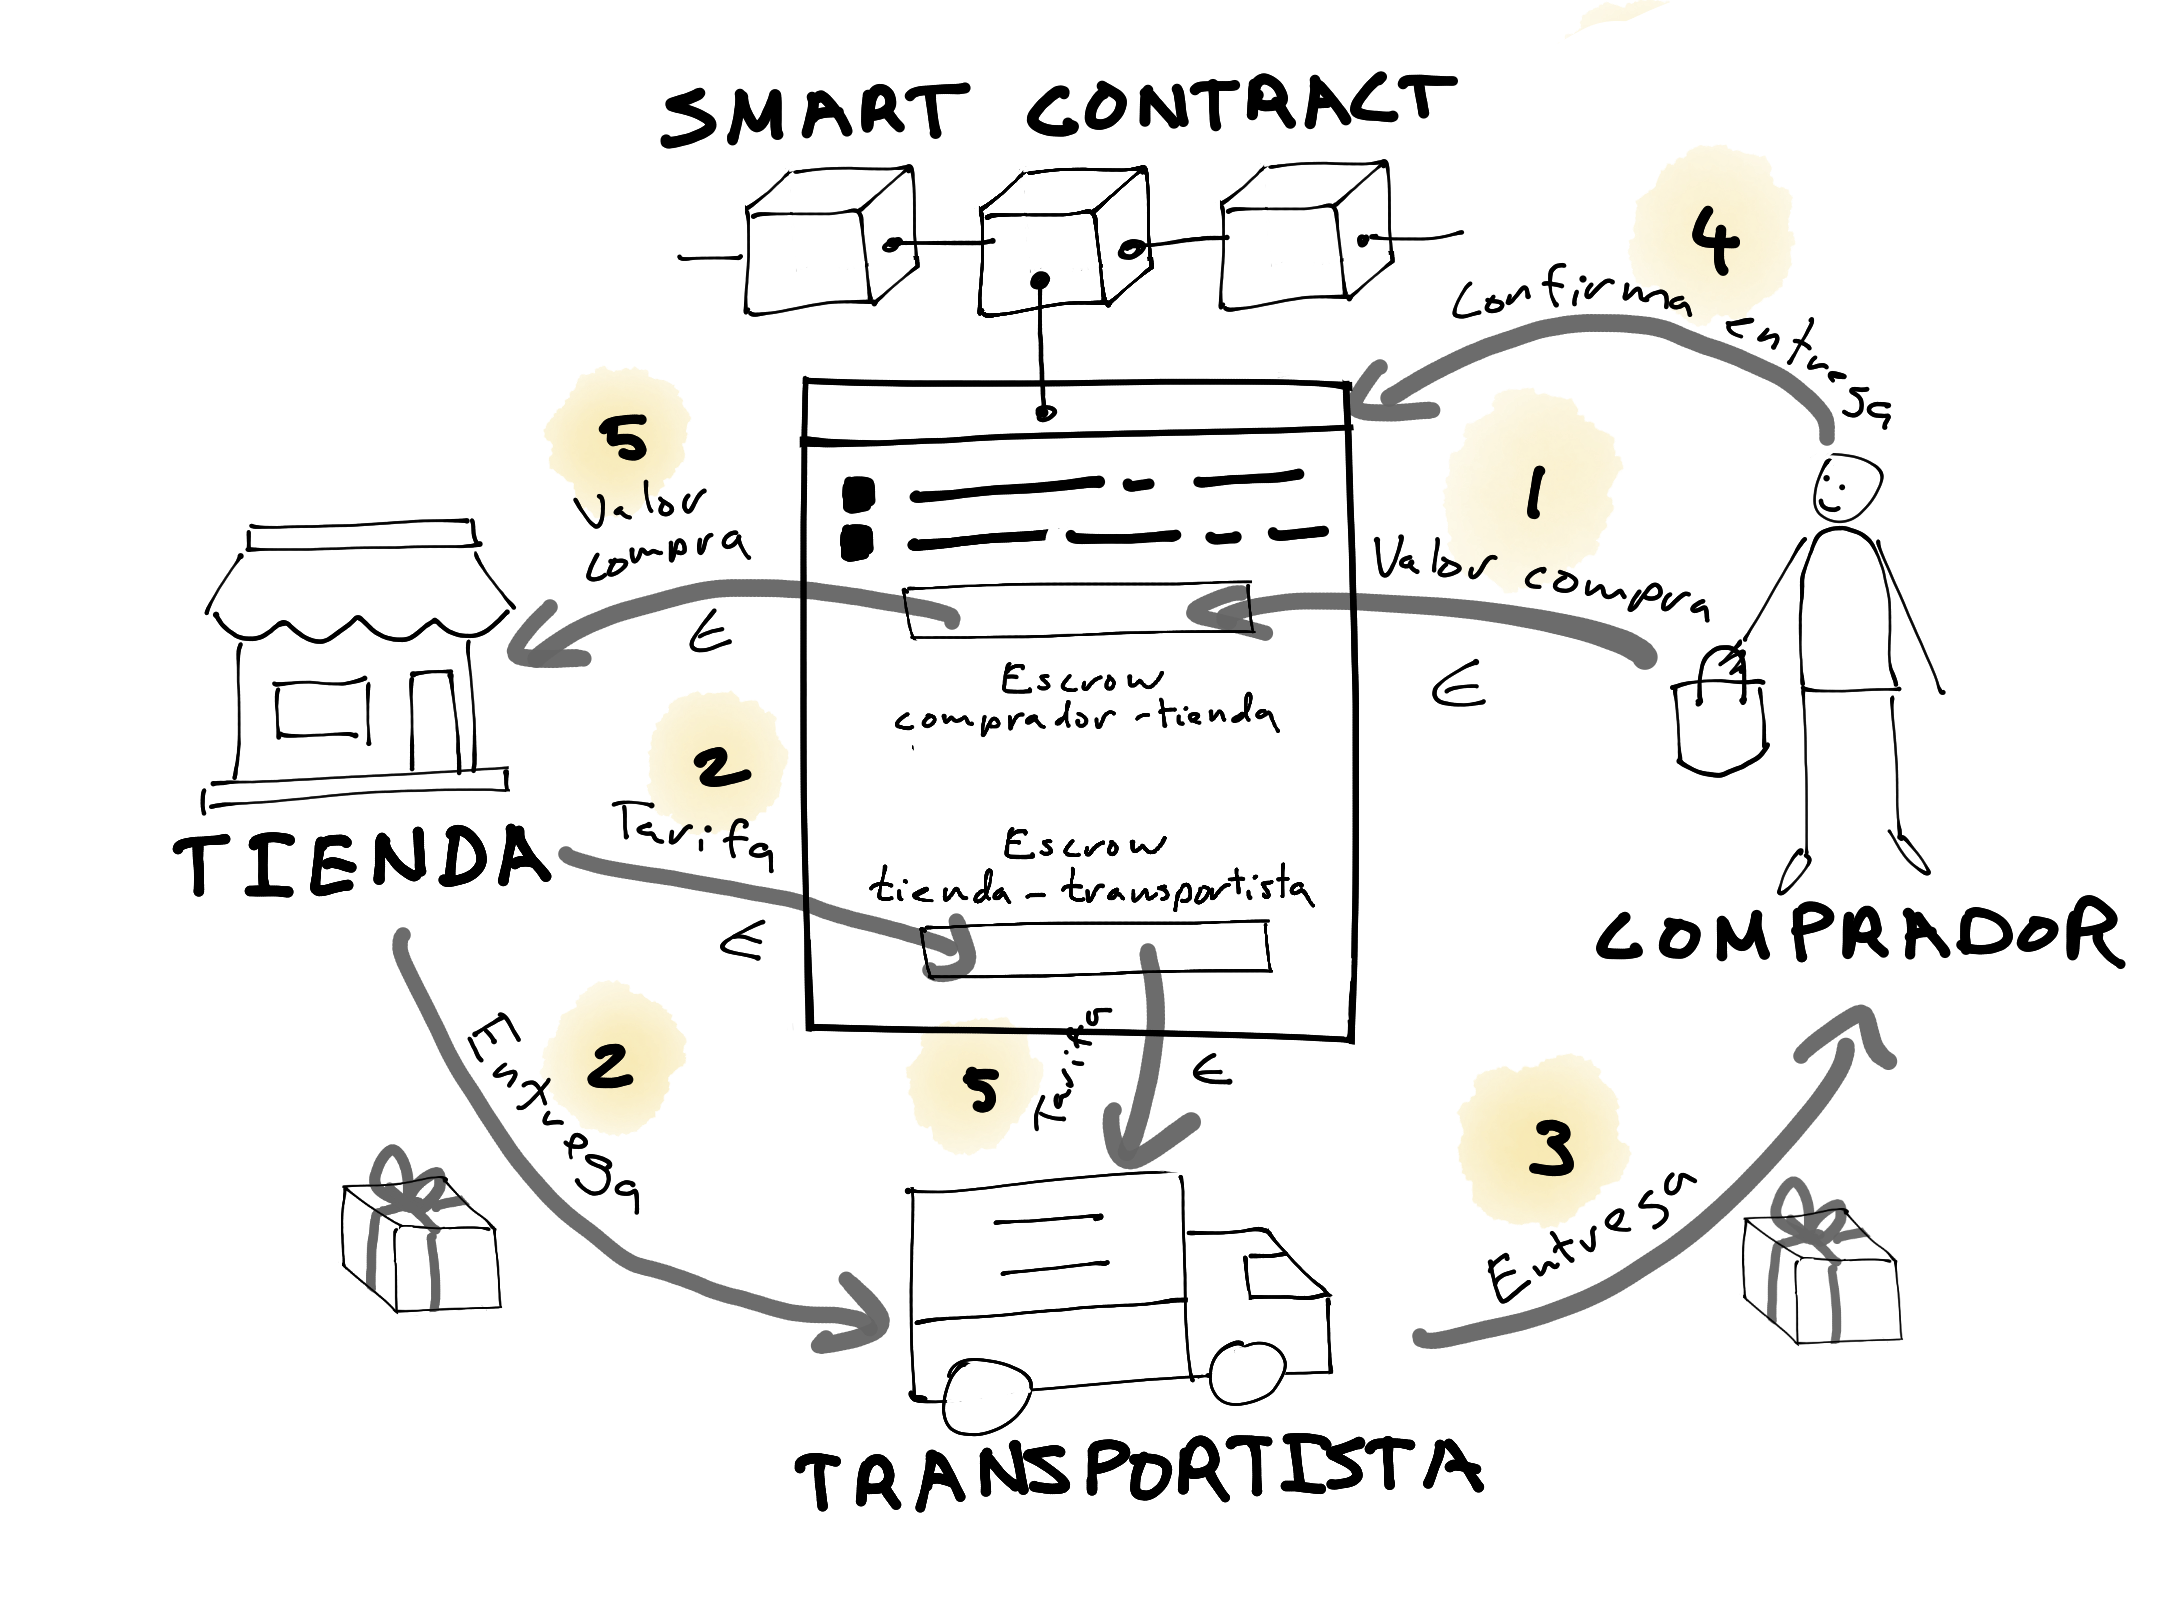 Diagrama de flujo de una compra con escrow gestionado por un smart contract